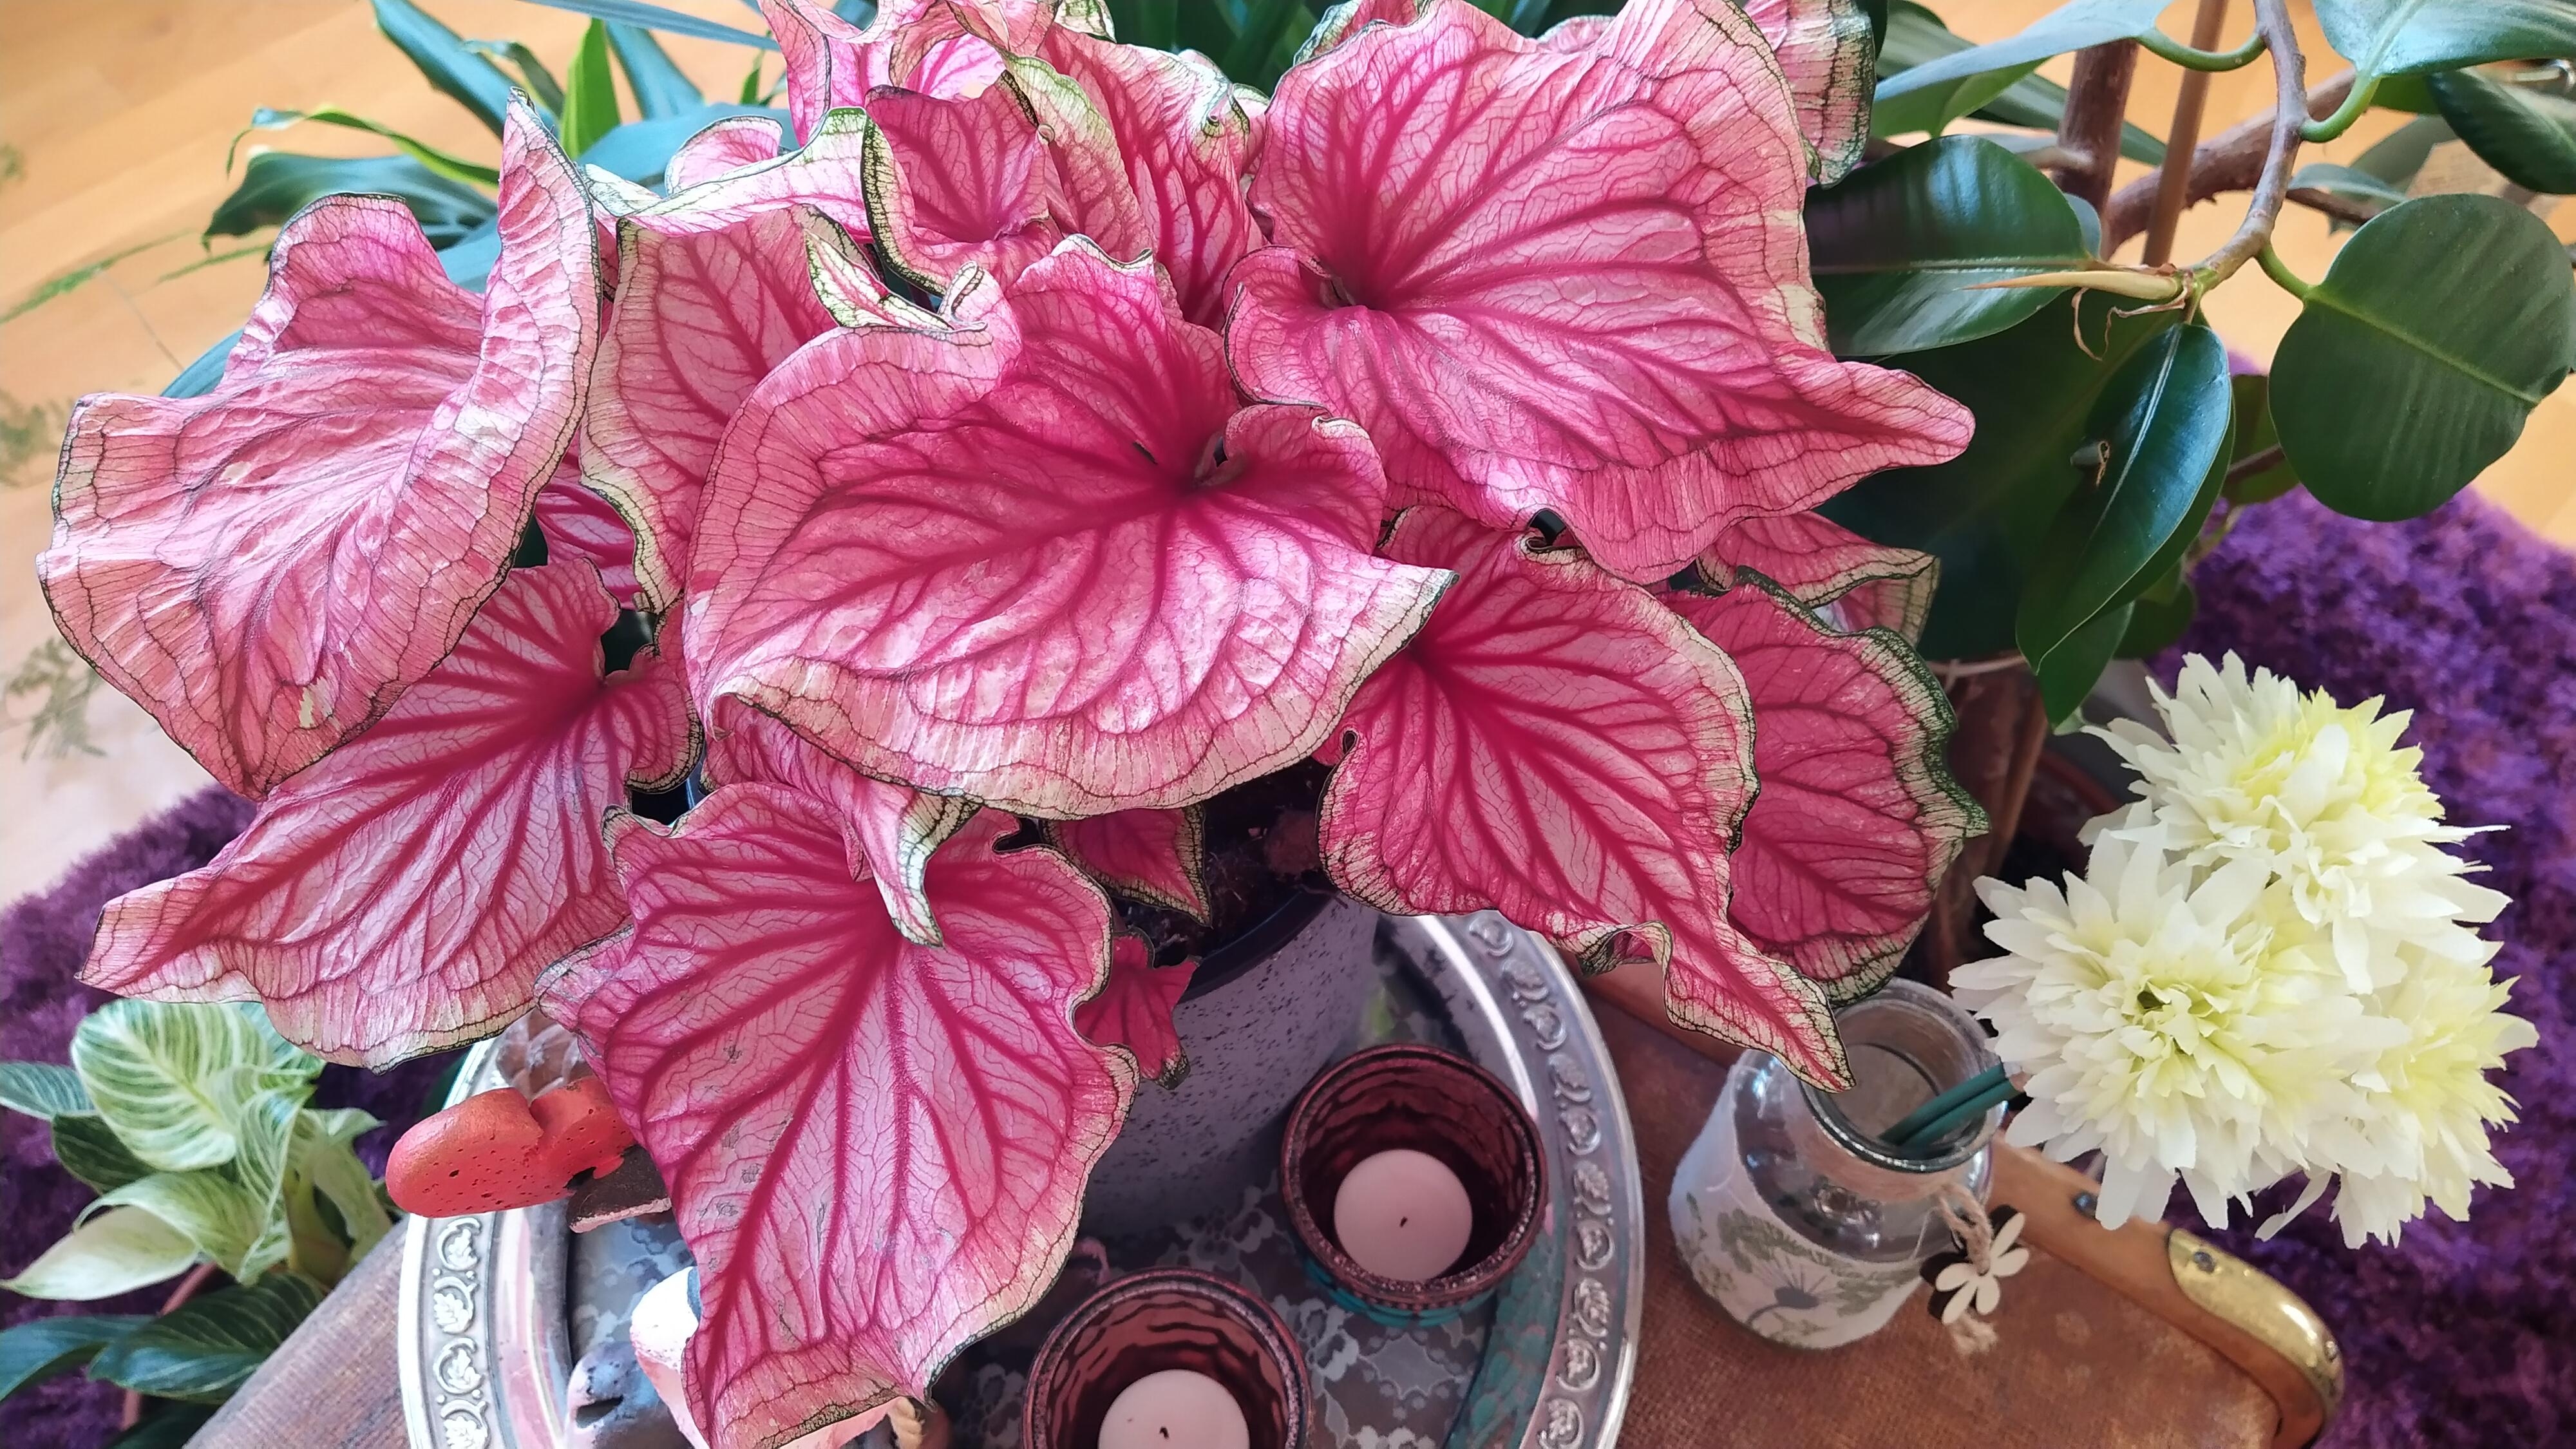 Caladium Sweetheart in Pink
#pflanzen #caladium #plants #indoorplants #zimmerpflanze #pflanzenliebe #couchliebe 